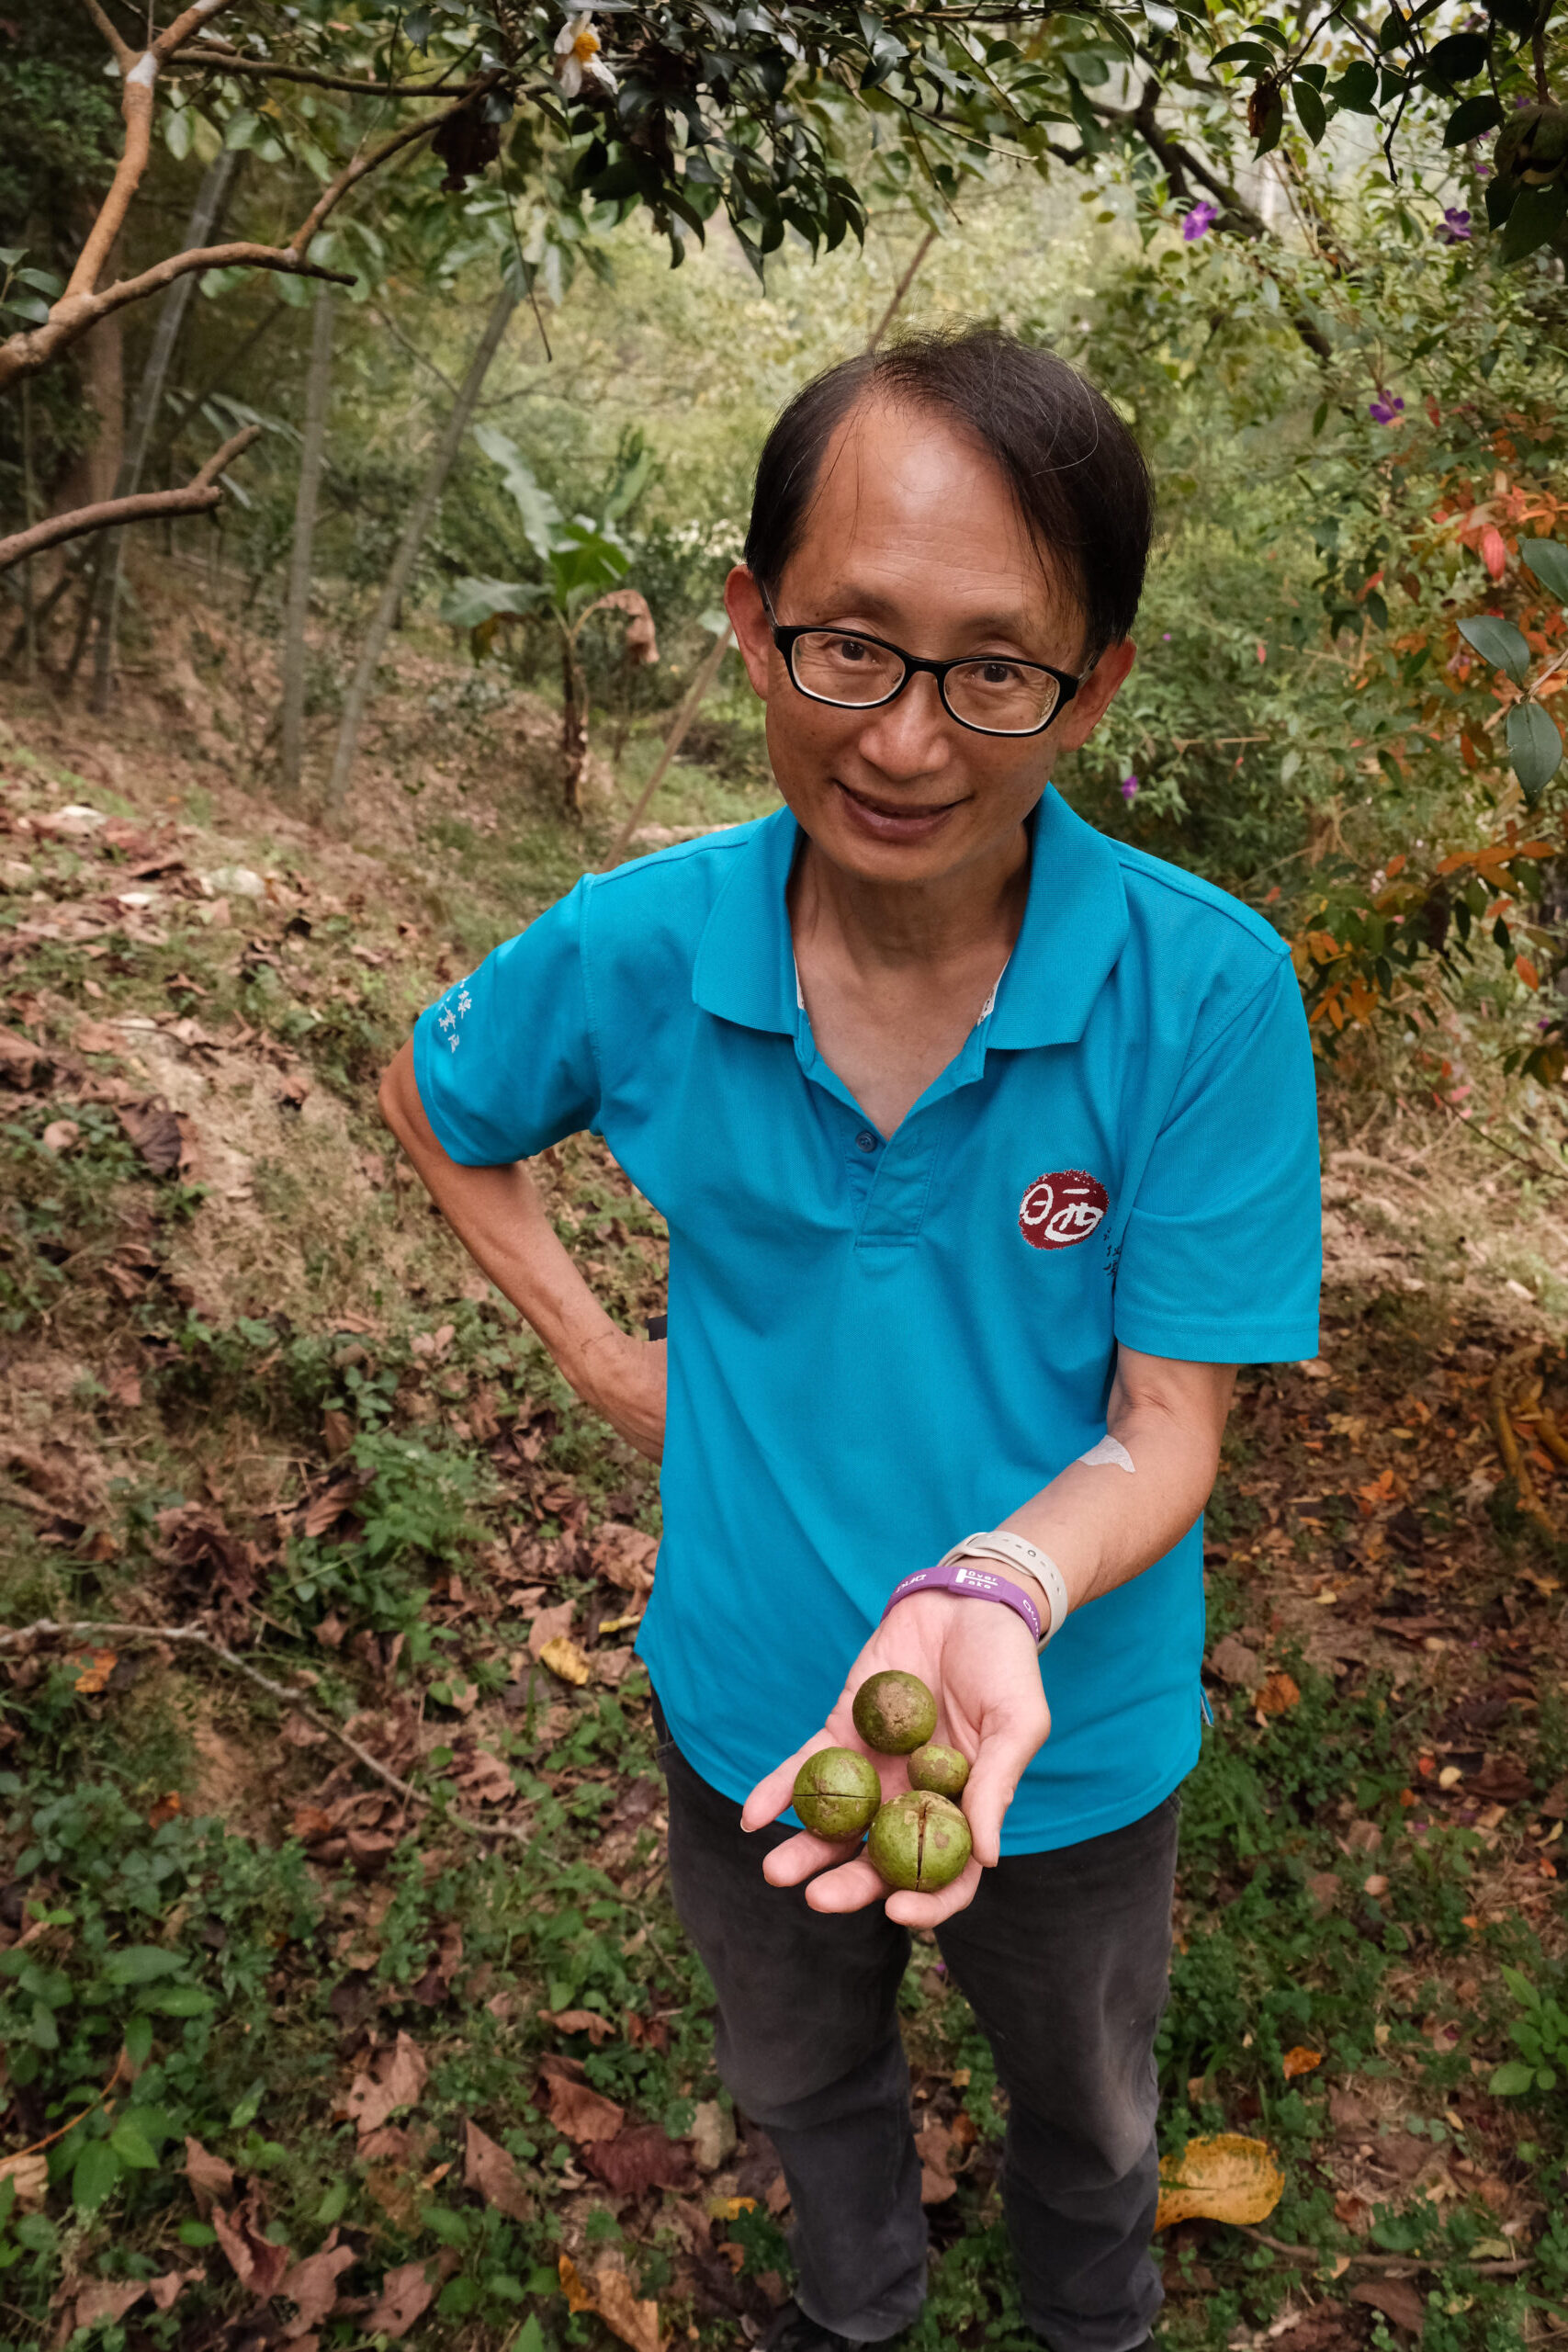 柏竺山莊主人陳英仁介紹園區豐富的樹林生態，像是採摘茶籽讓遊客體驗另類採果。